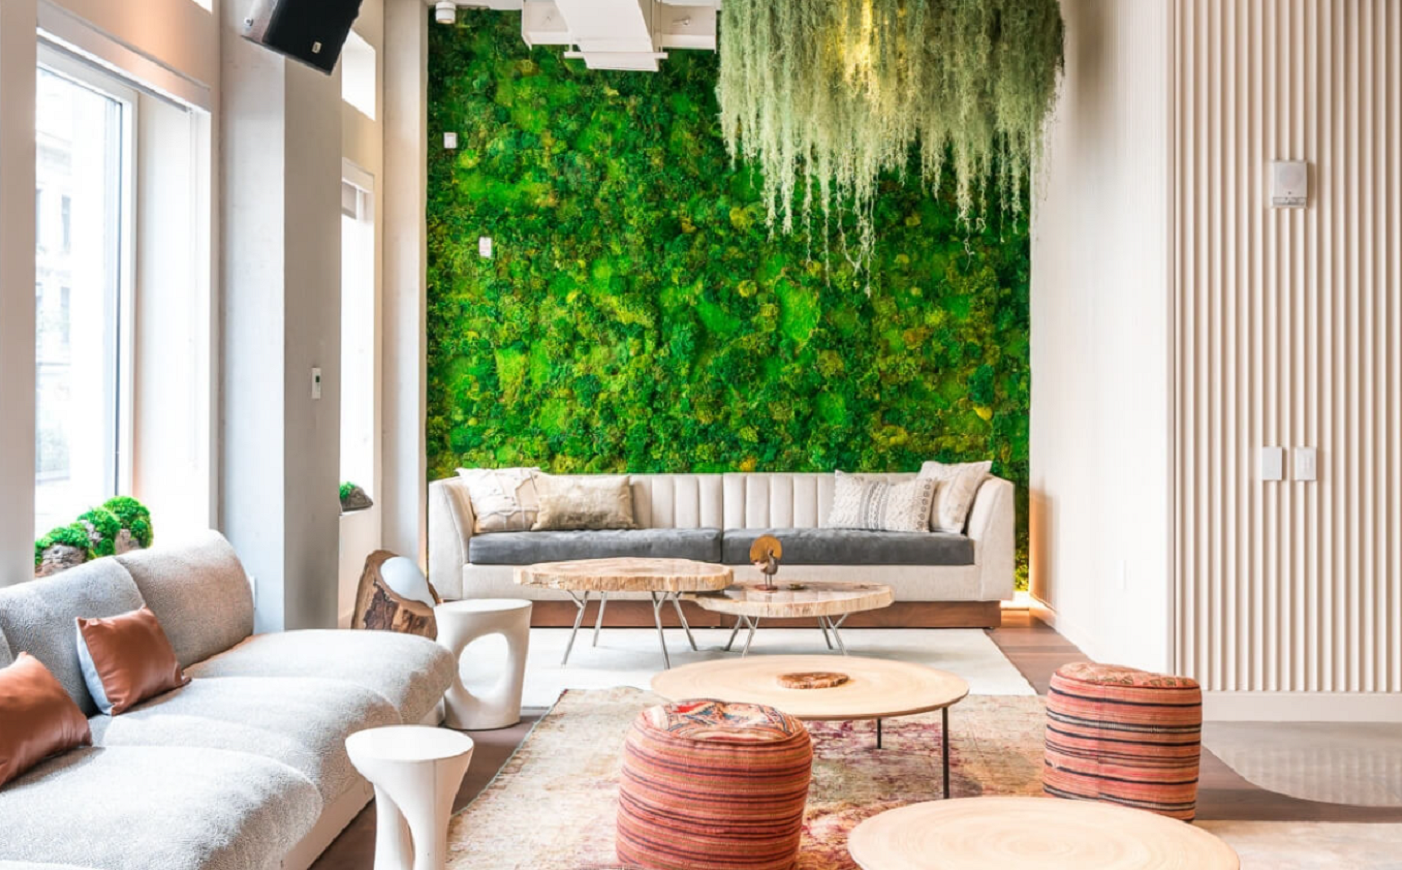 3 Ideas de Jardines Verticales - Un Precioso Muro de Plantas en el Salón